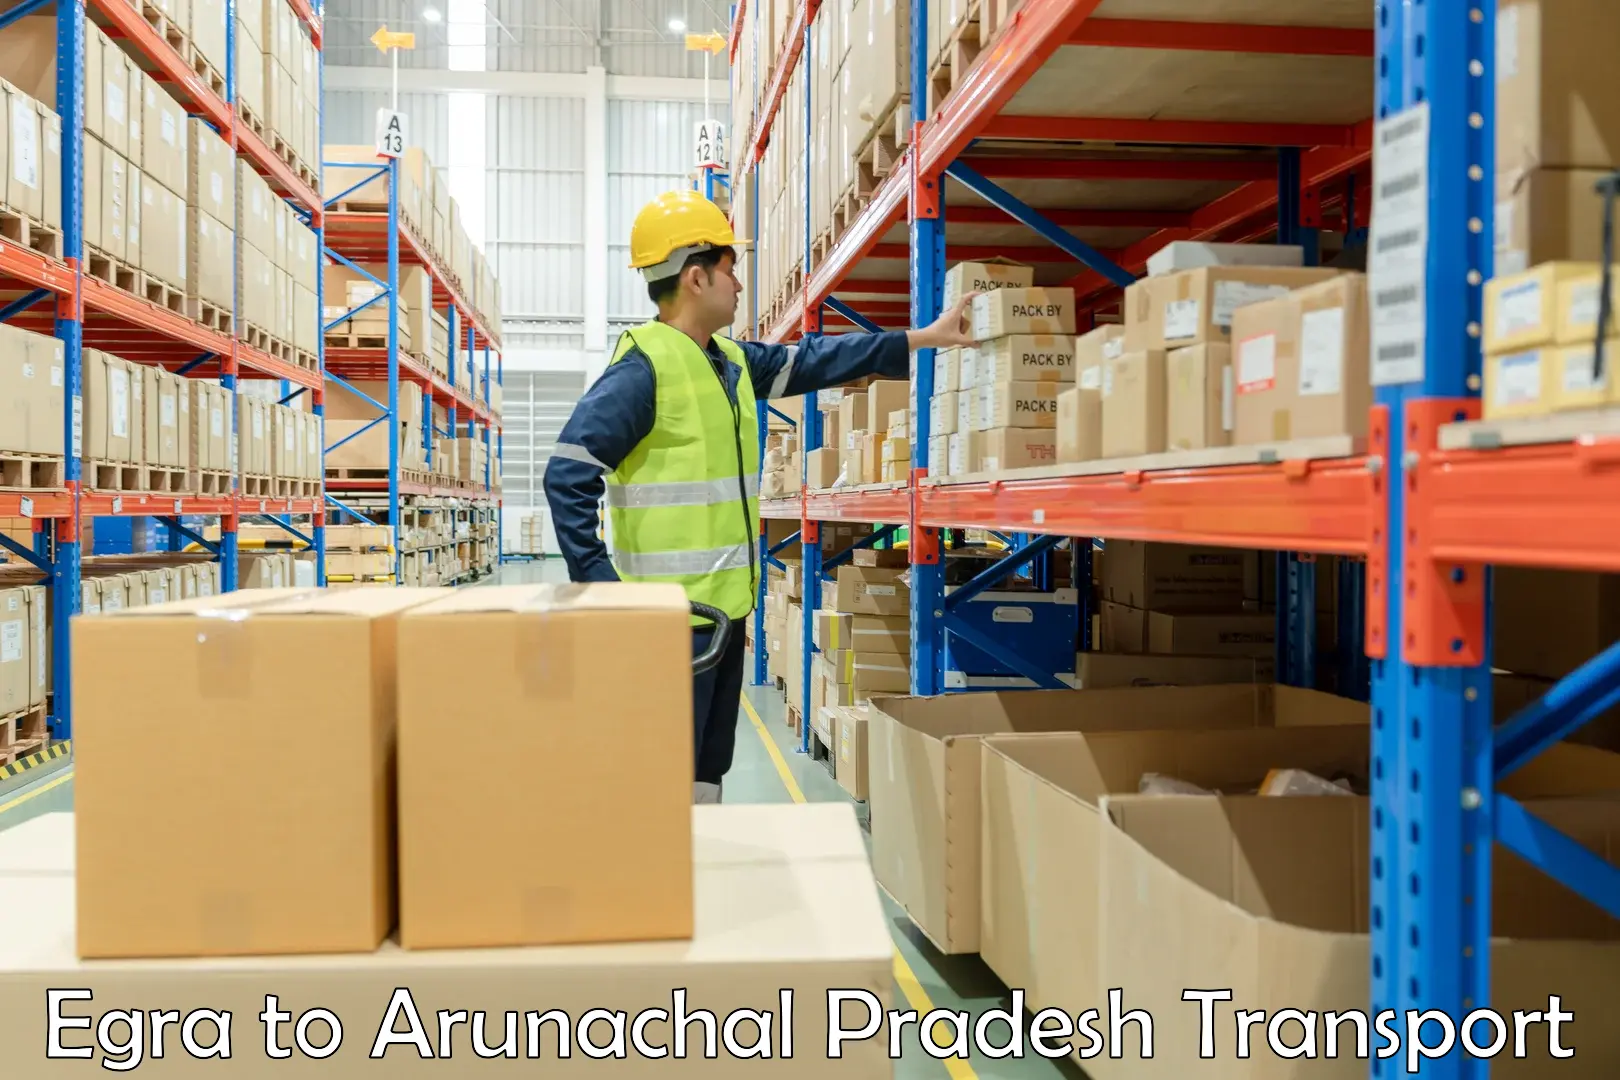 Daily parcel service transport Egra to Arunachal Pradesh